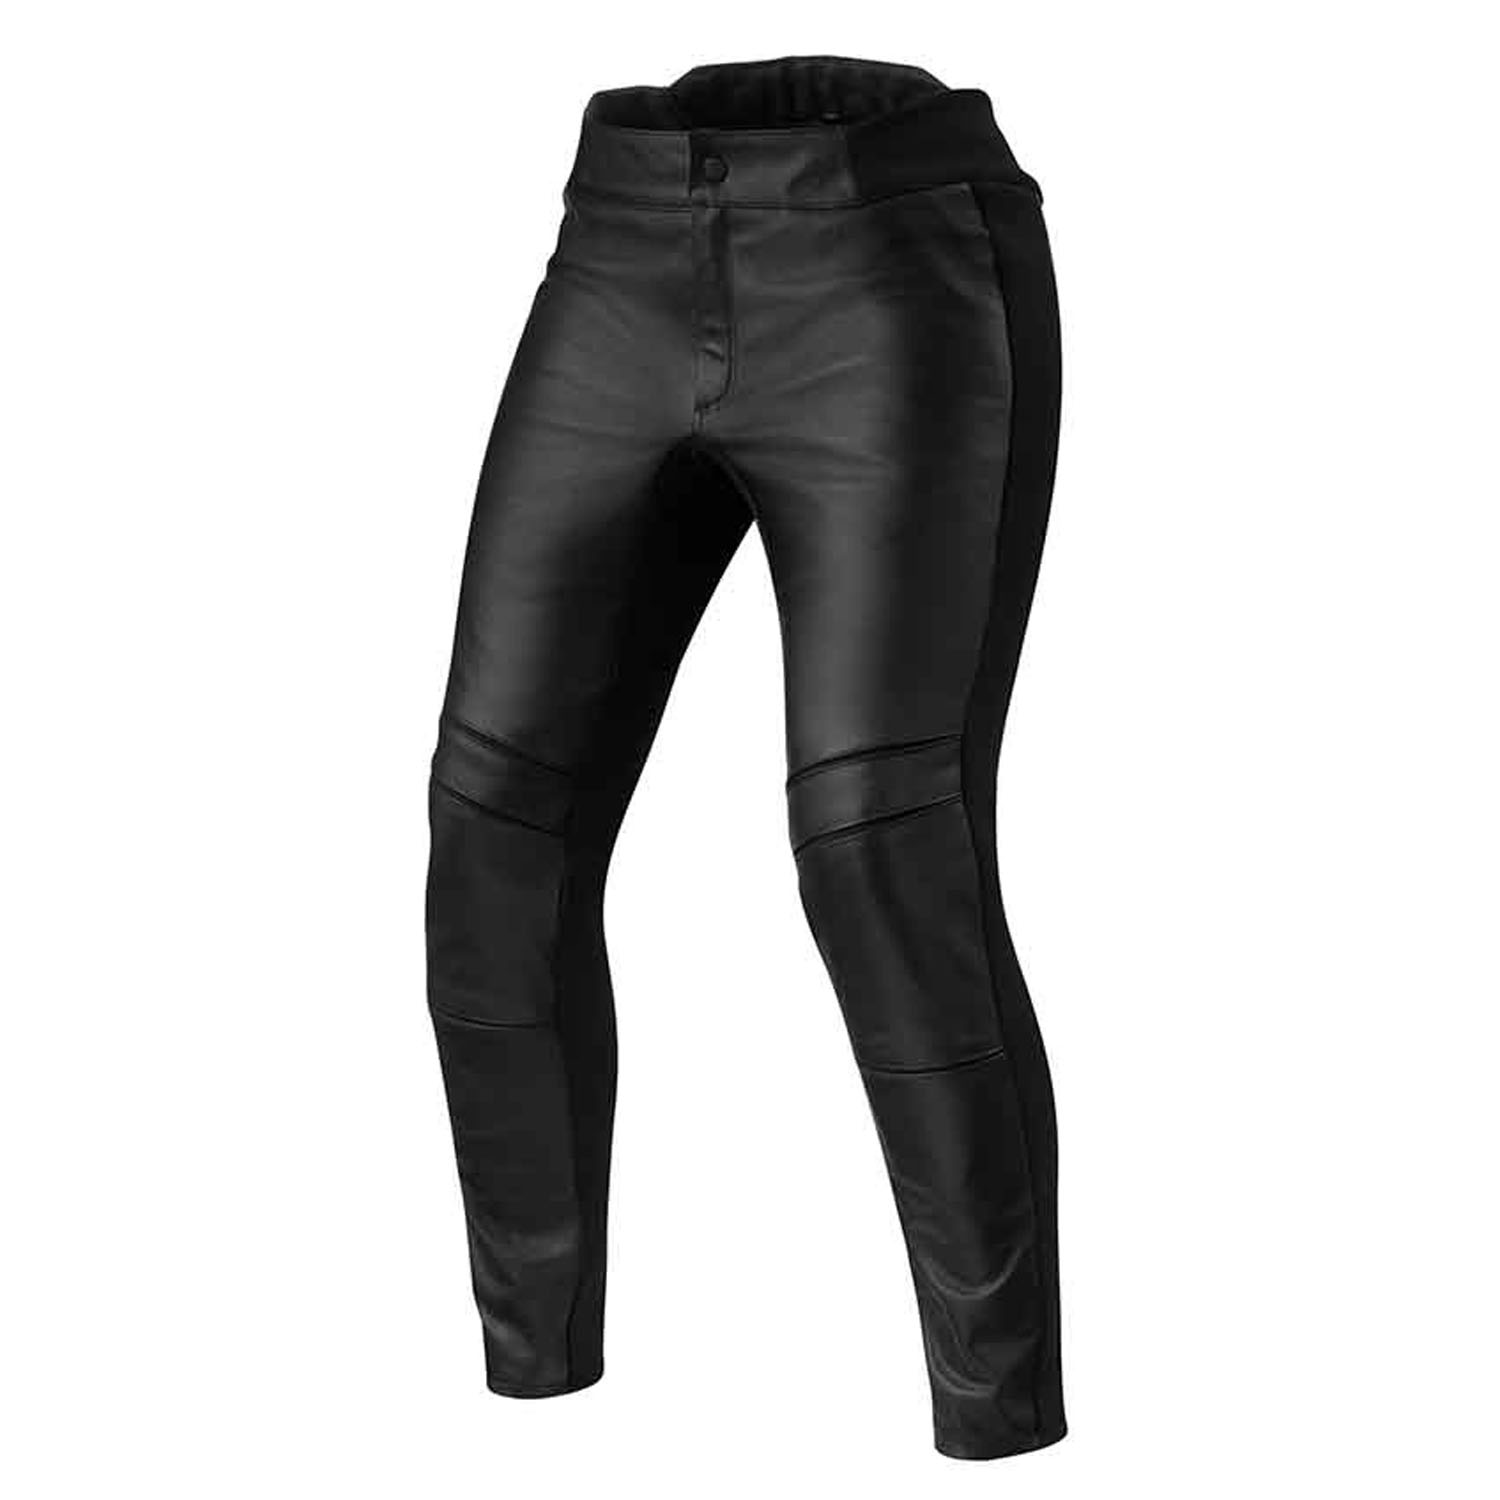 Image of REV'IT! Maci Ladies Black Standard Motorcycle Pants Taille 36